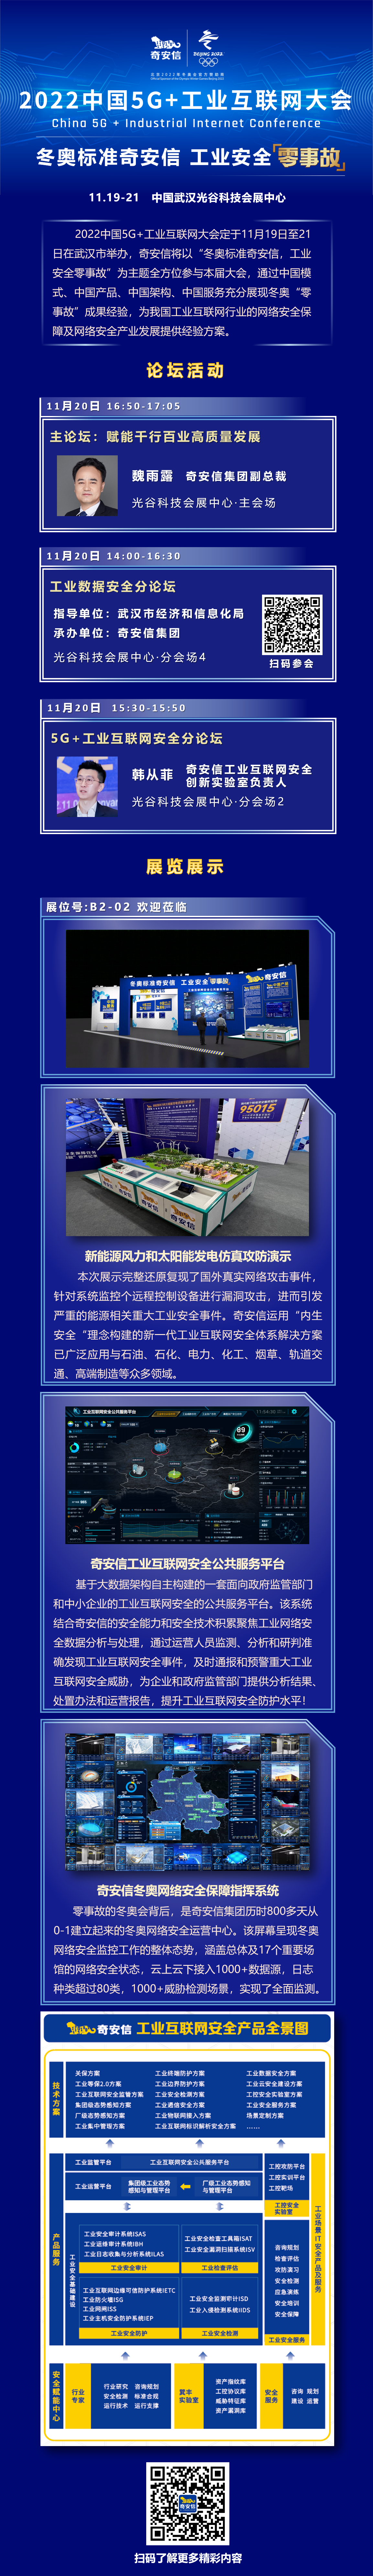 2022中国5G+工业互联网大会-奇安信精彩呈现